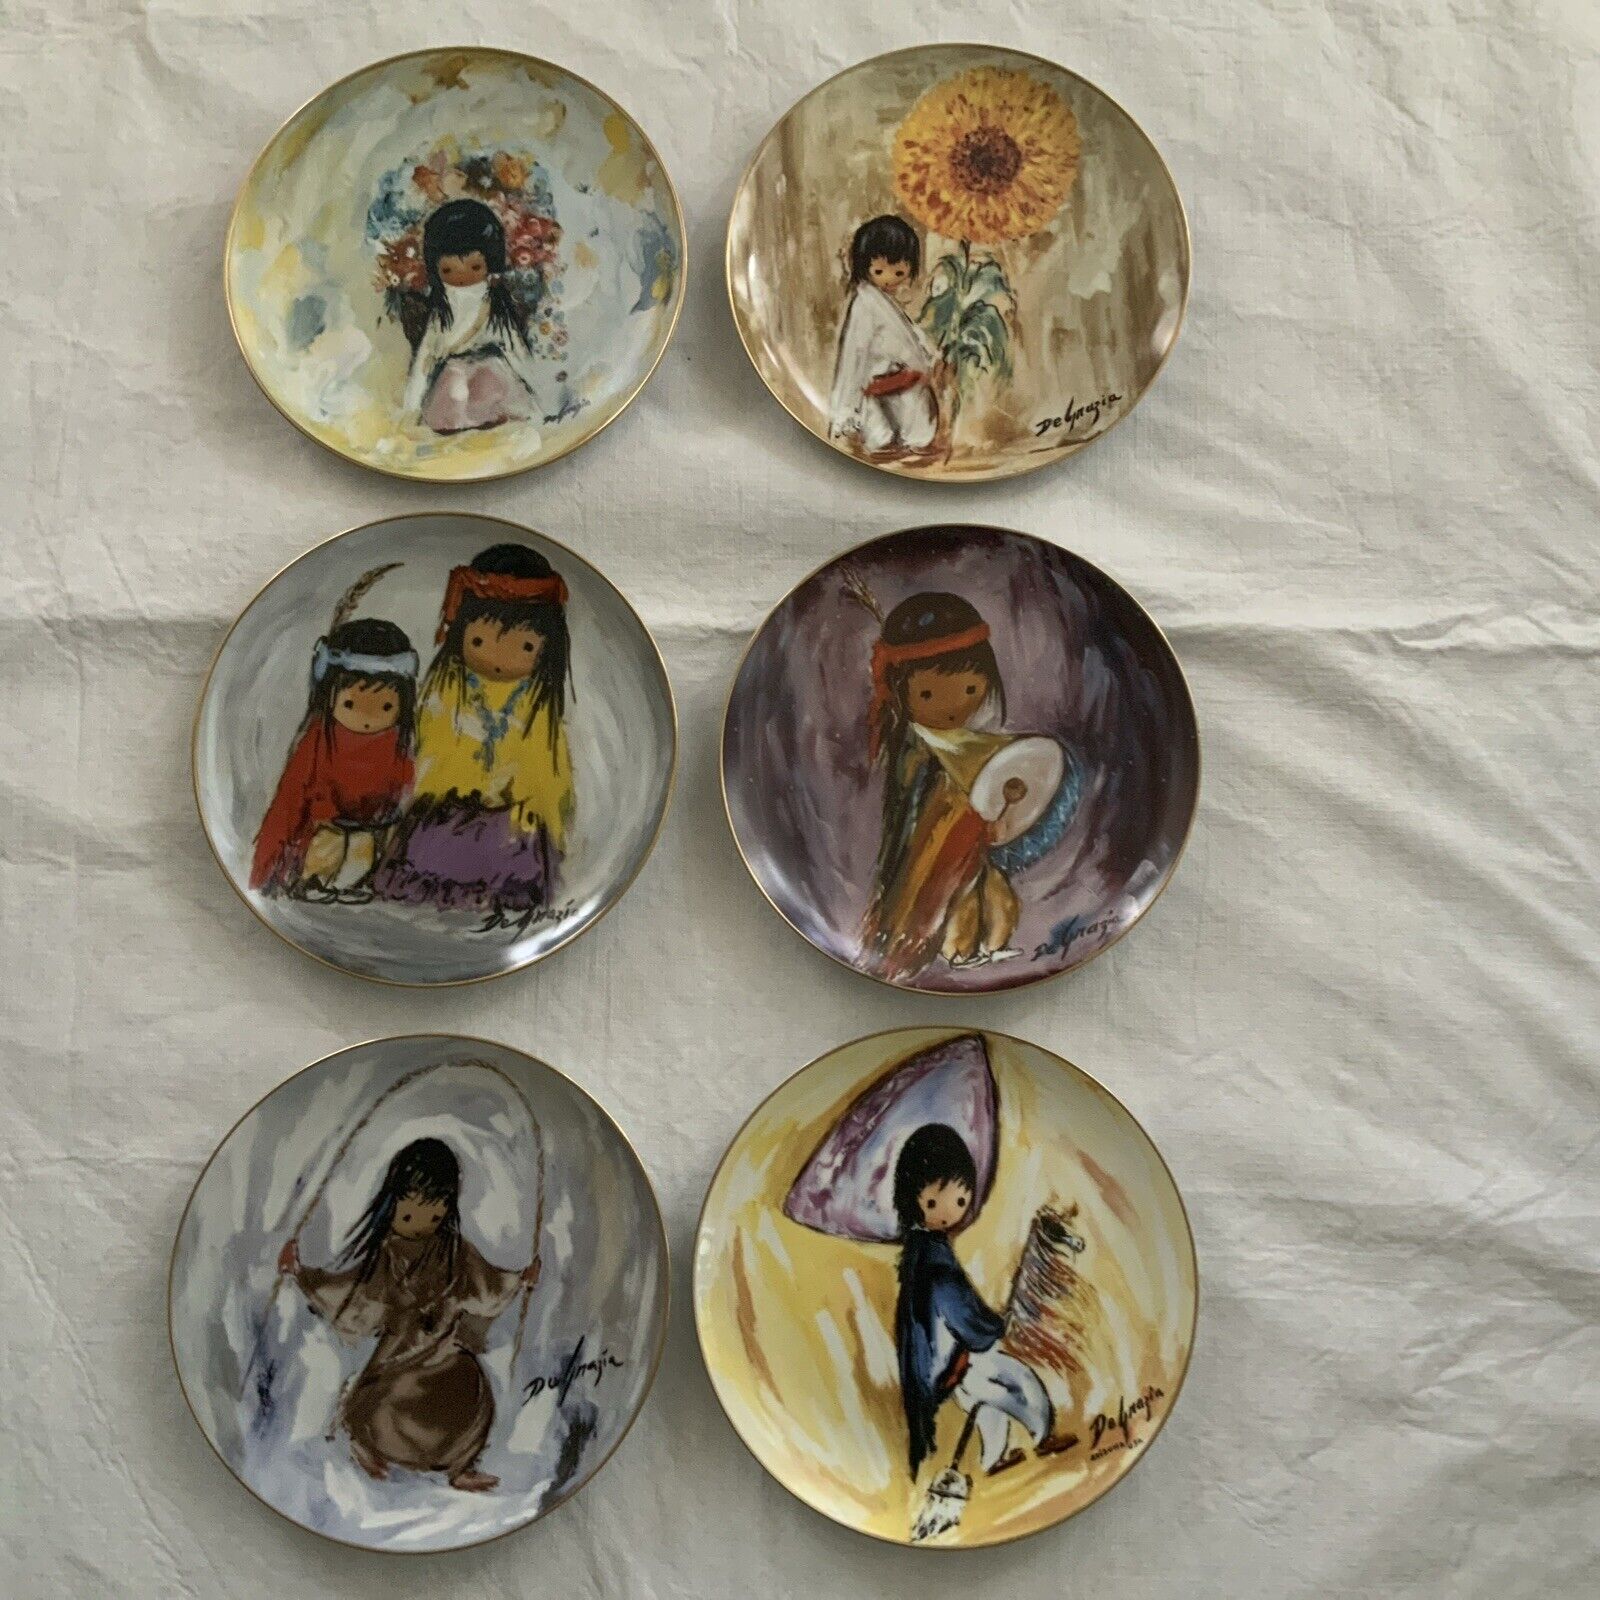 De Grazia 10” Collectors Plates - Children - Lot of 6 DeGrazia